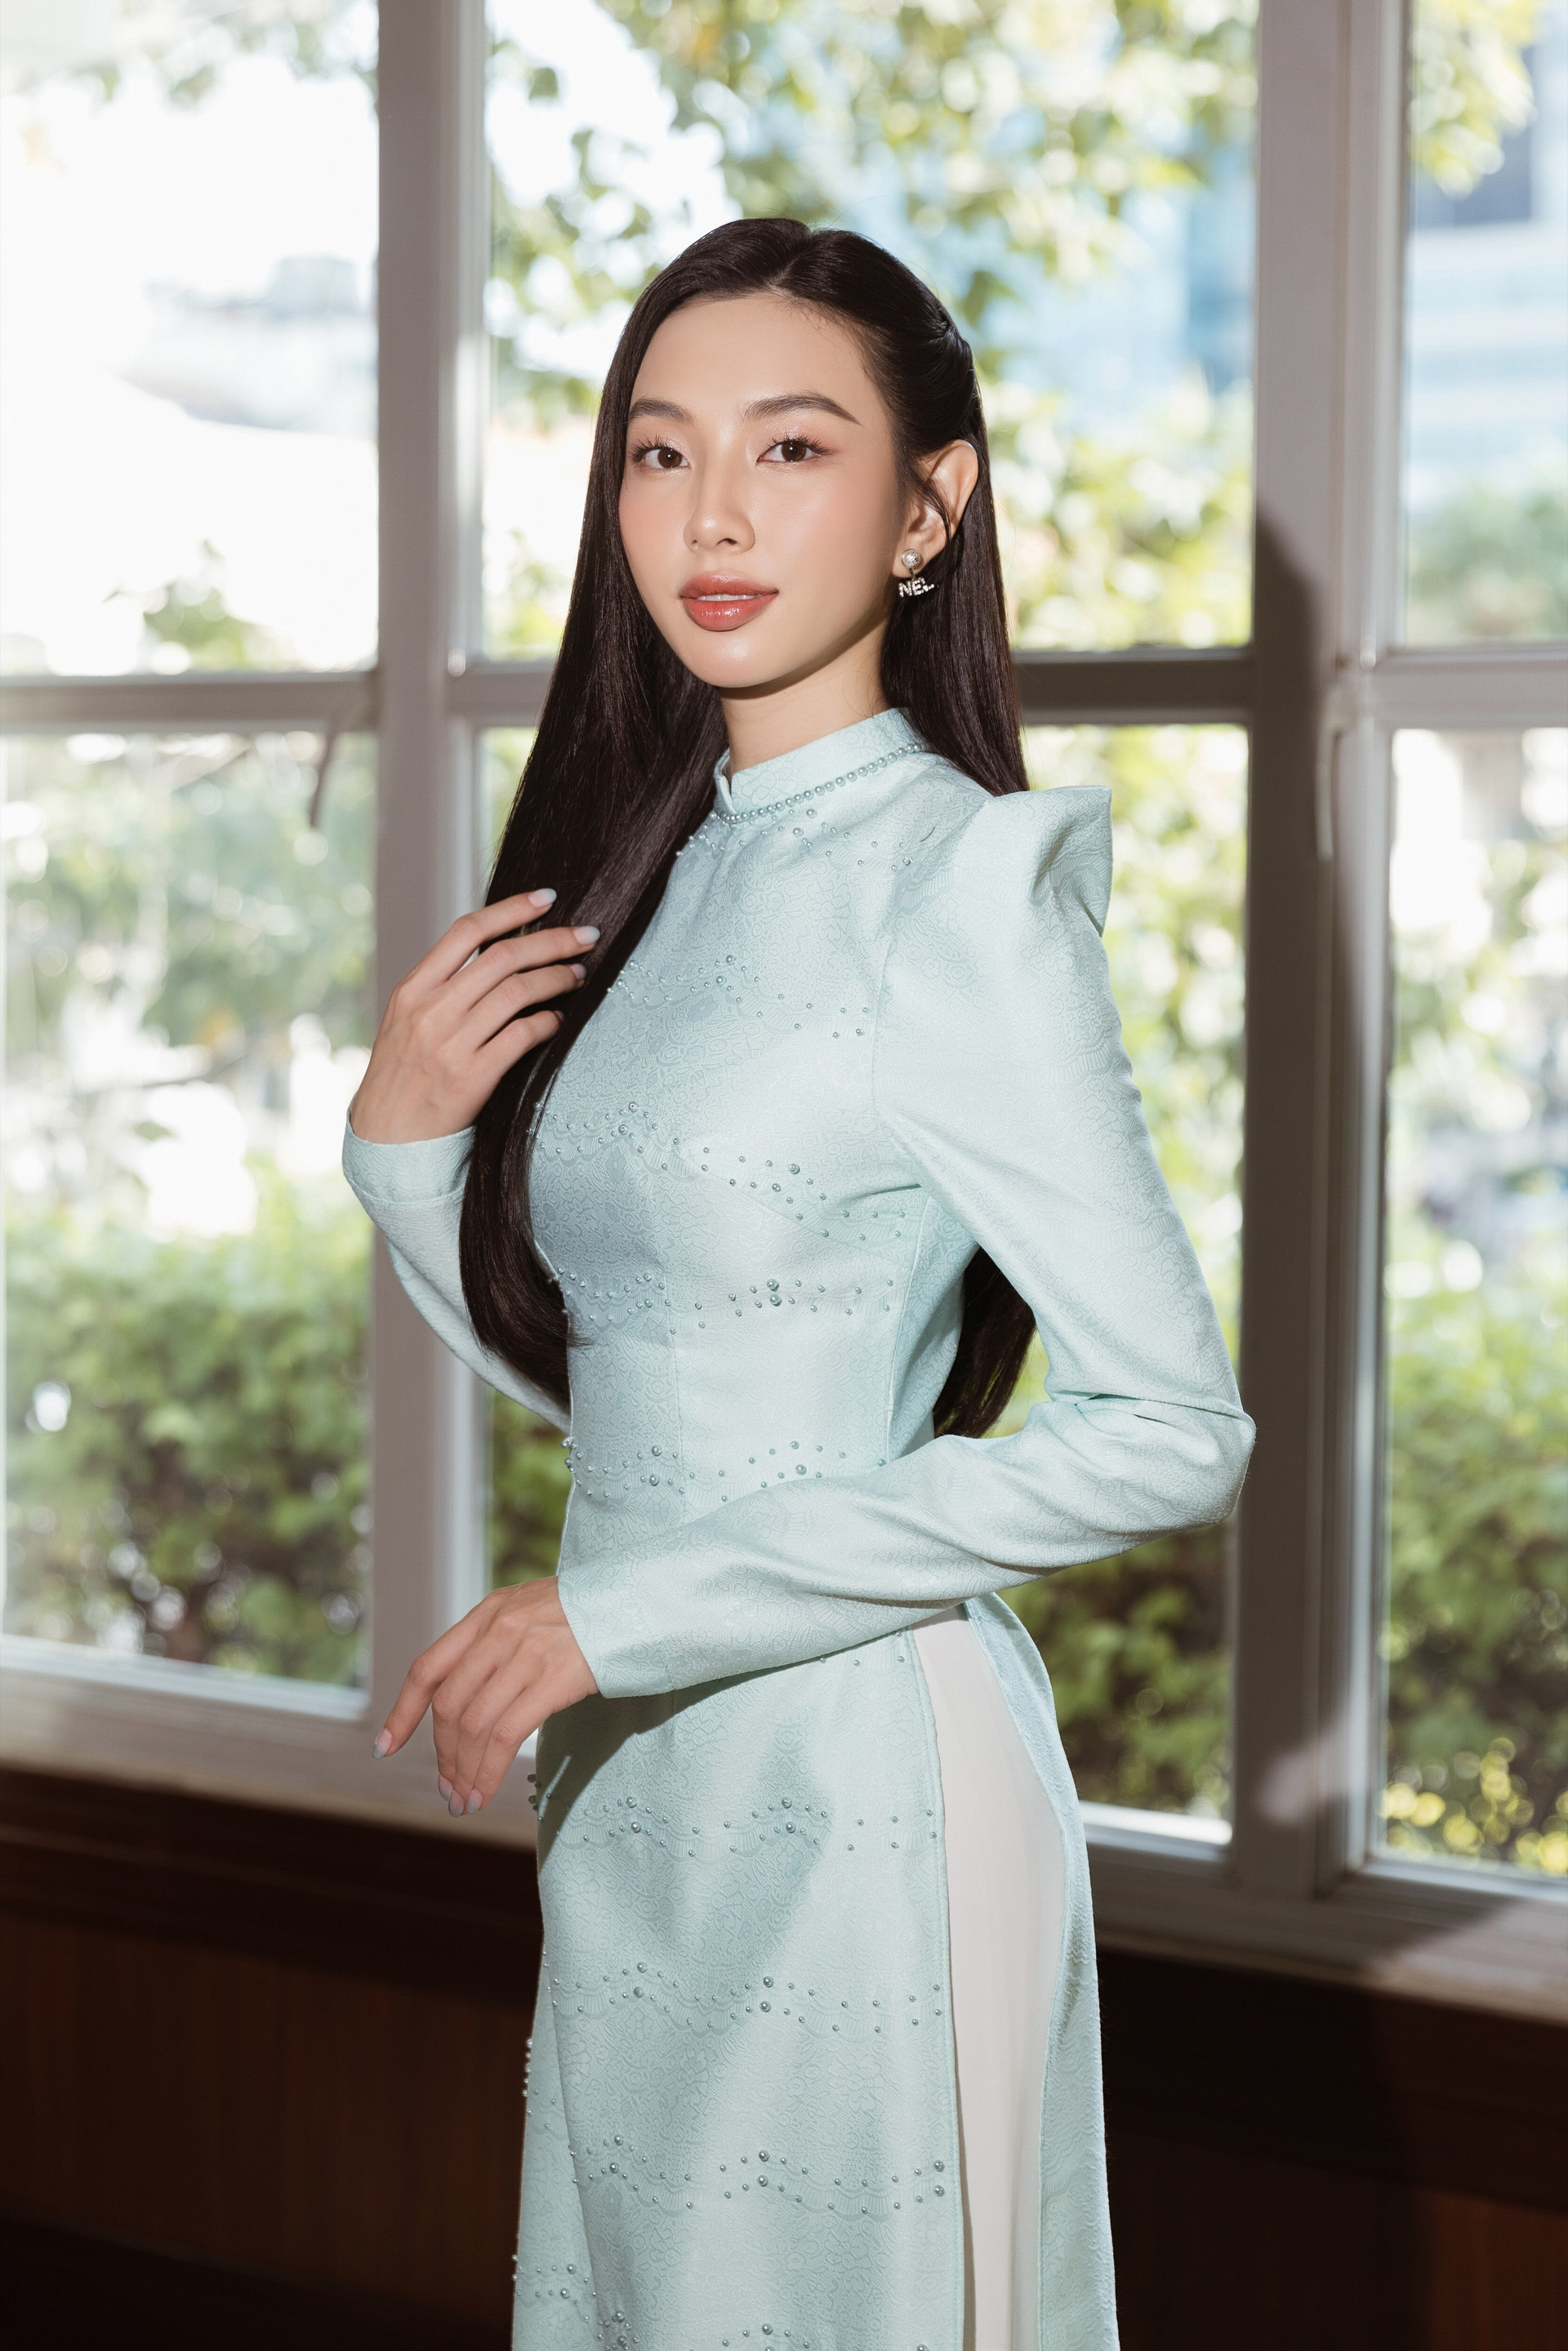 Hoa hậu Thuỳ Tiên được đánh giá là một trong những nàng hậu có nhiều hoạt động tích cực từ giải trí, thiện nguyện và các dự án cá nhân.